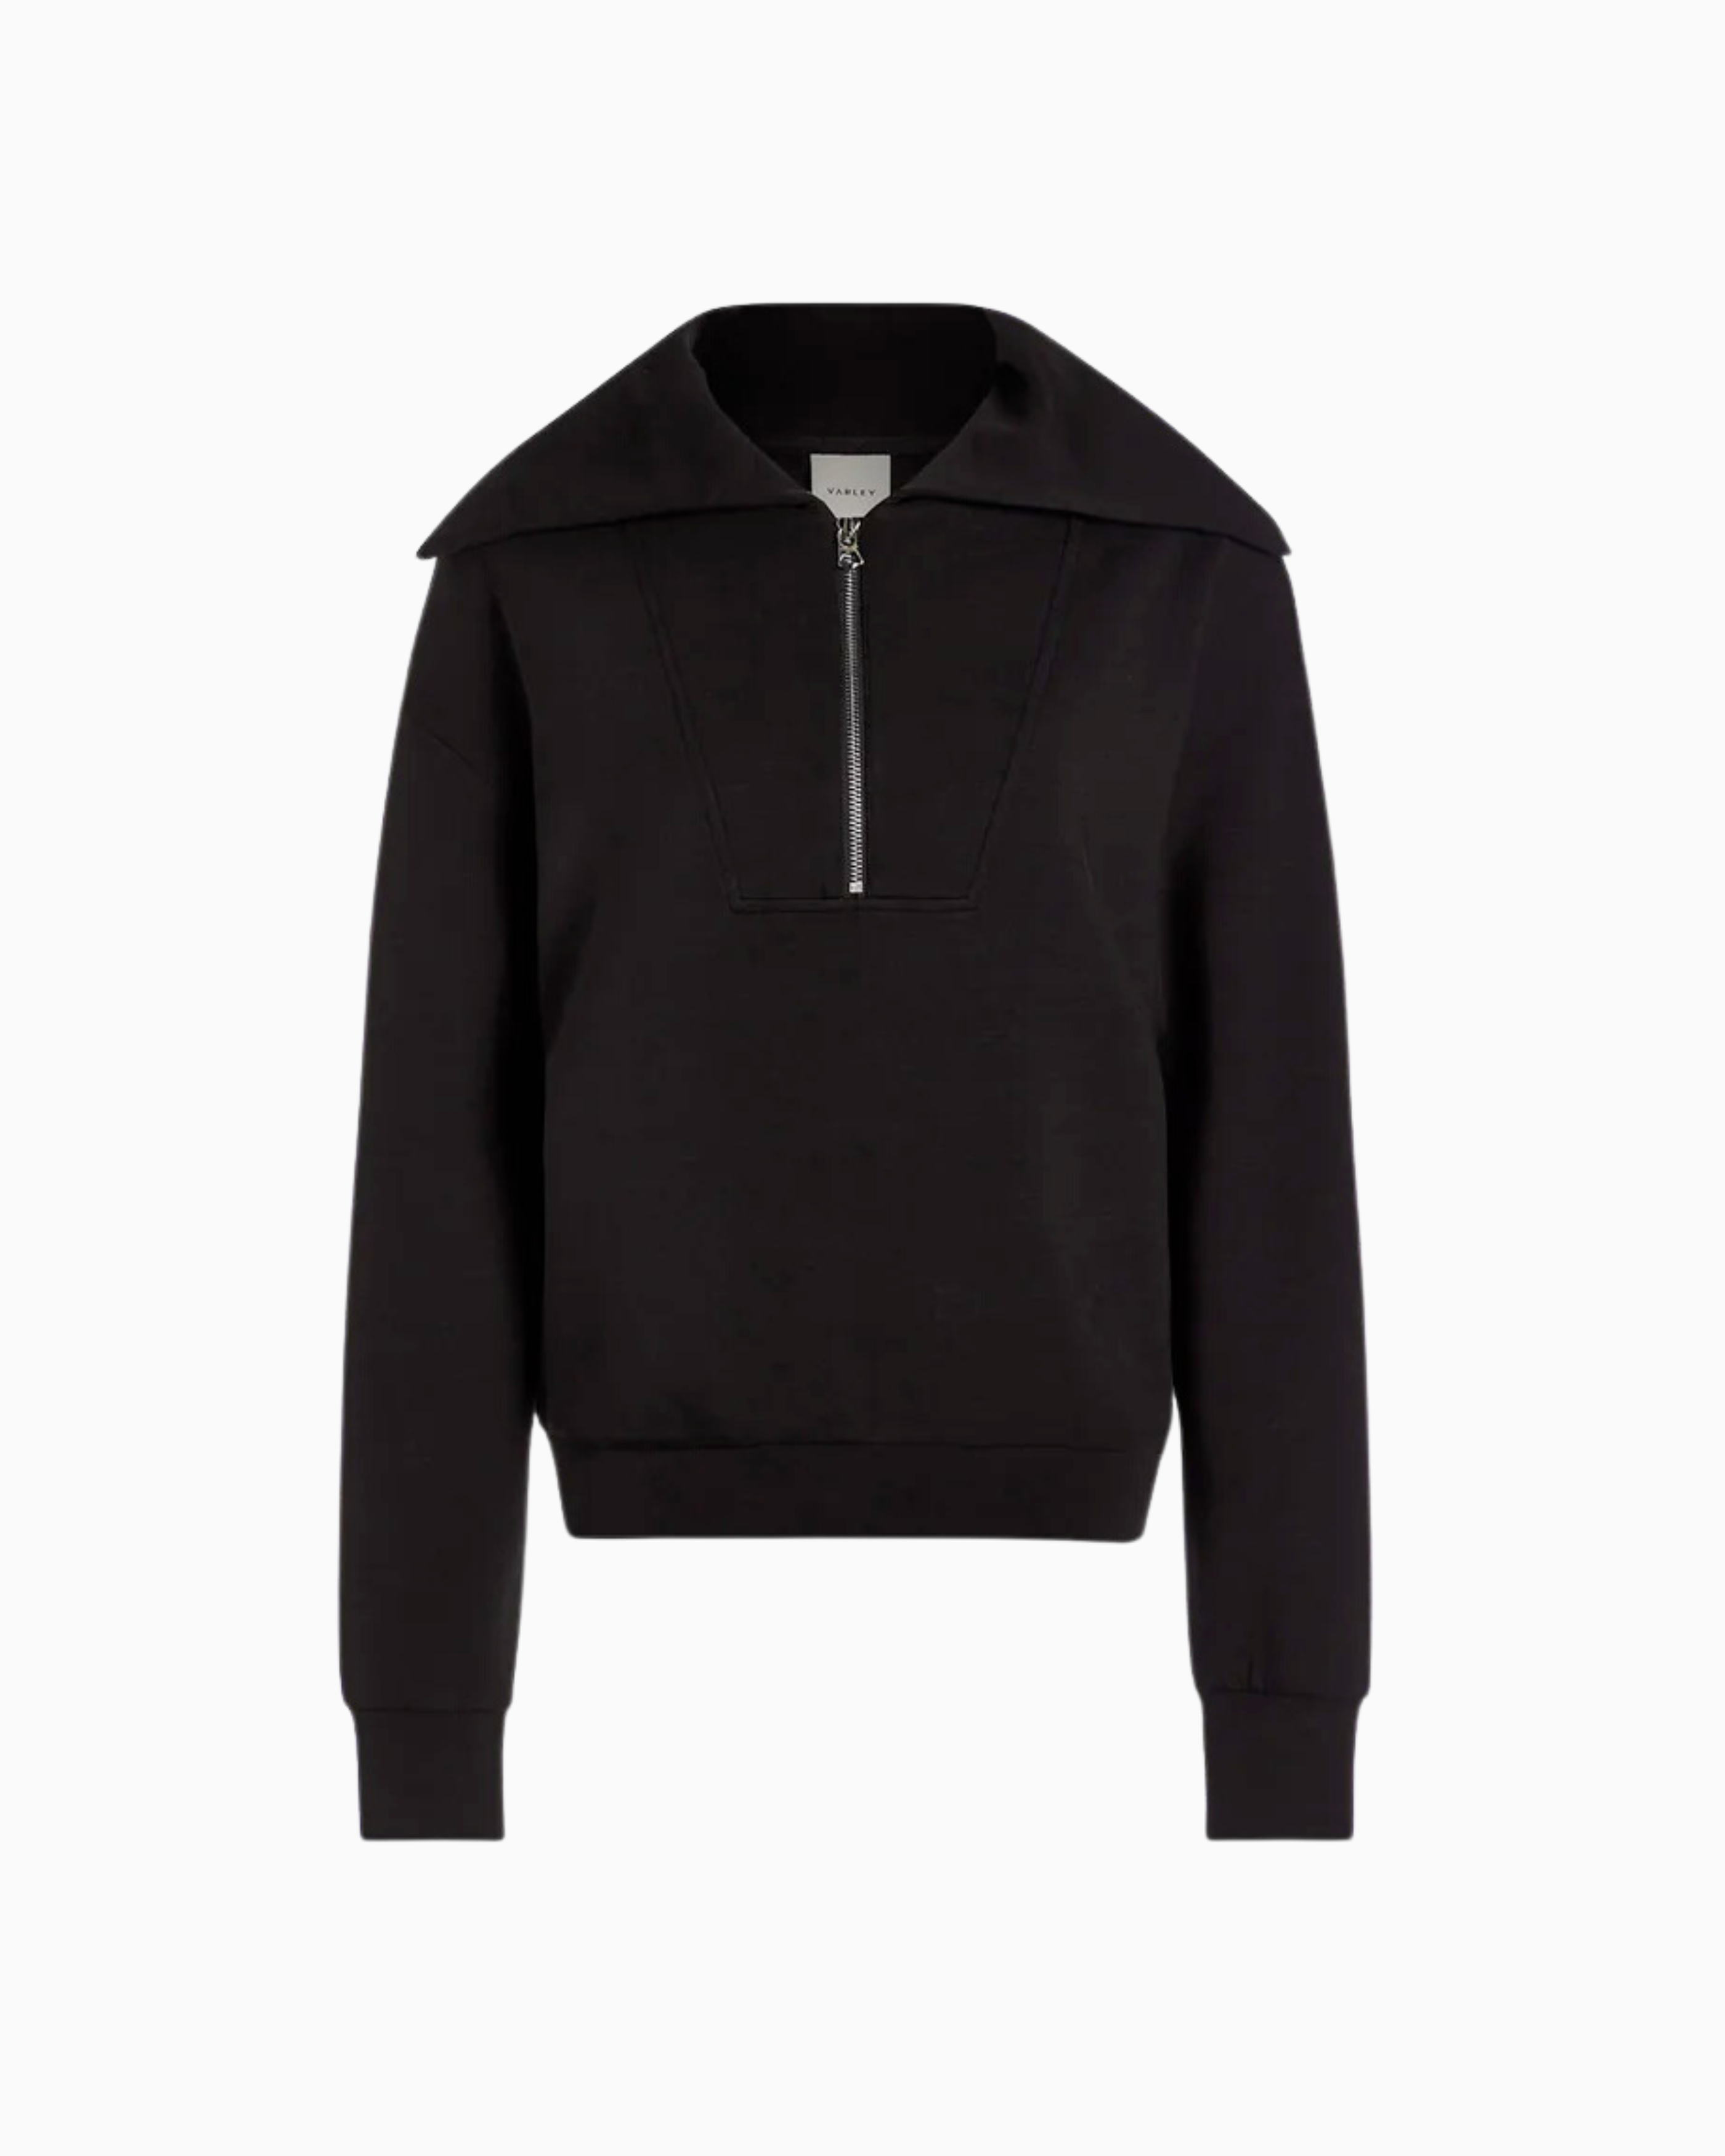 Varley Yates Half Zip Sweatshirt in Black